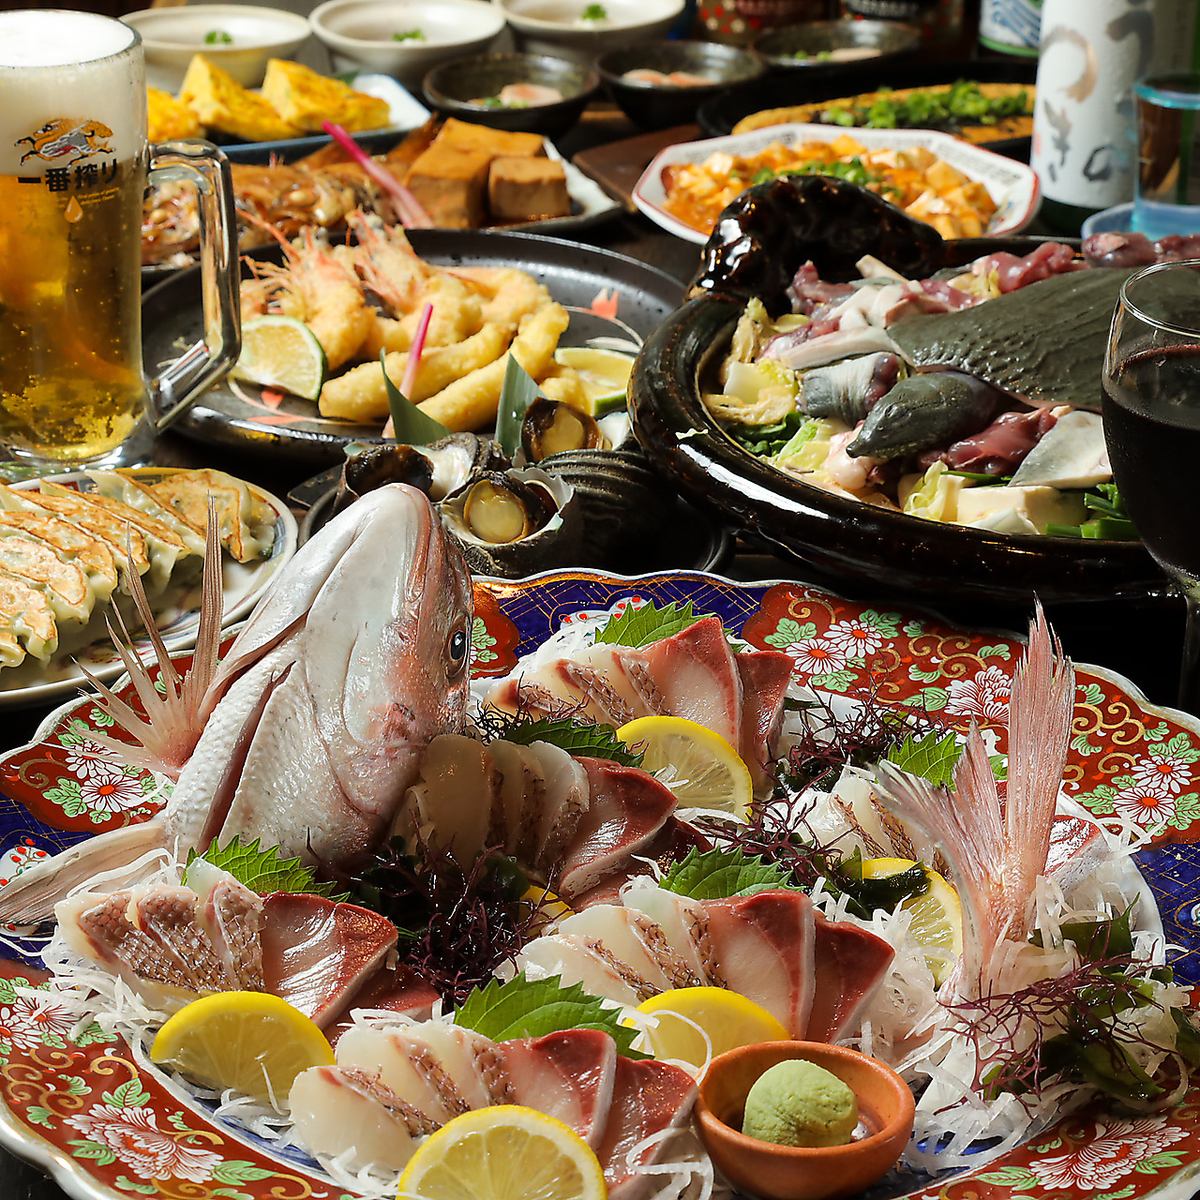 以日本料理為主的合理居酒屋。有300多種菜單。